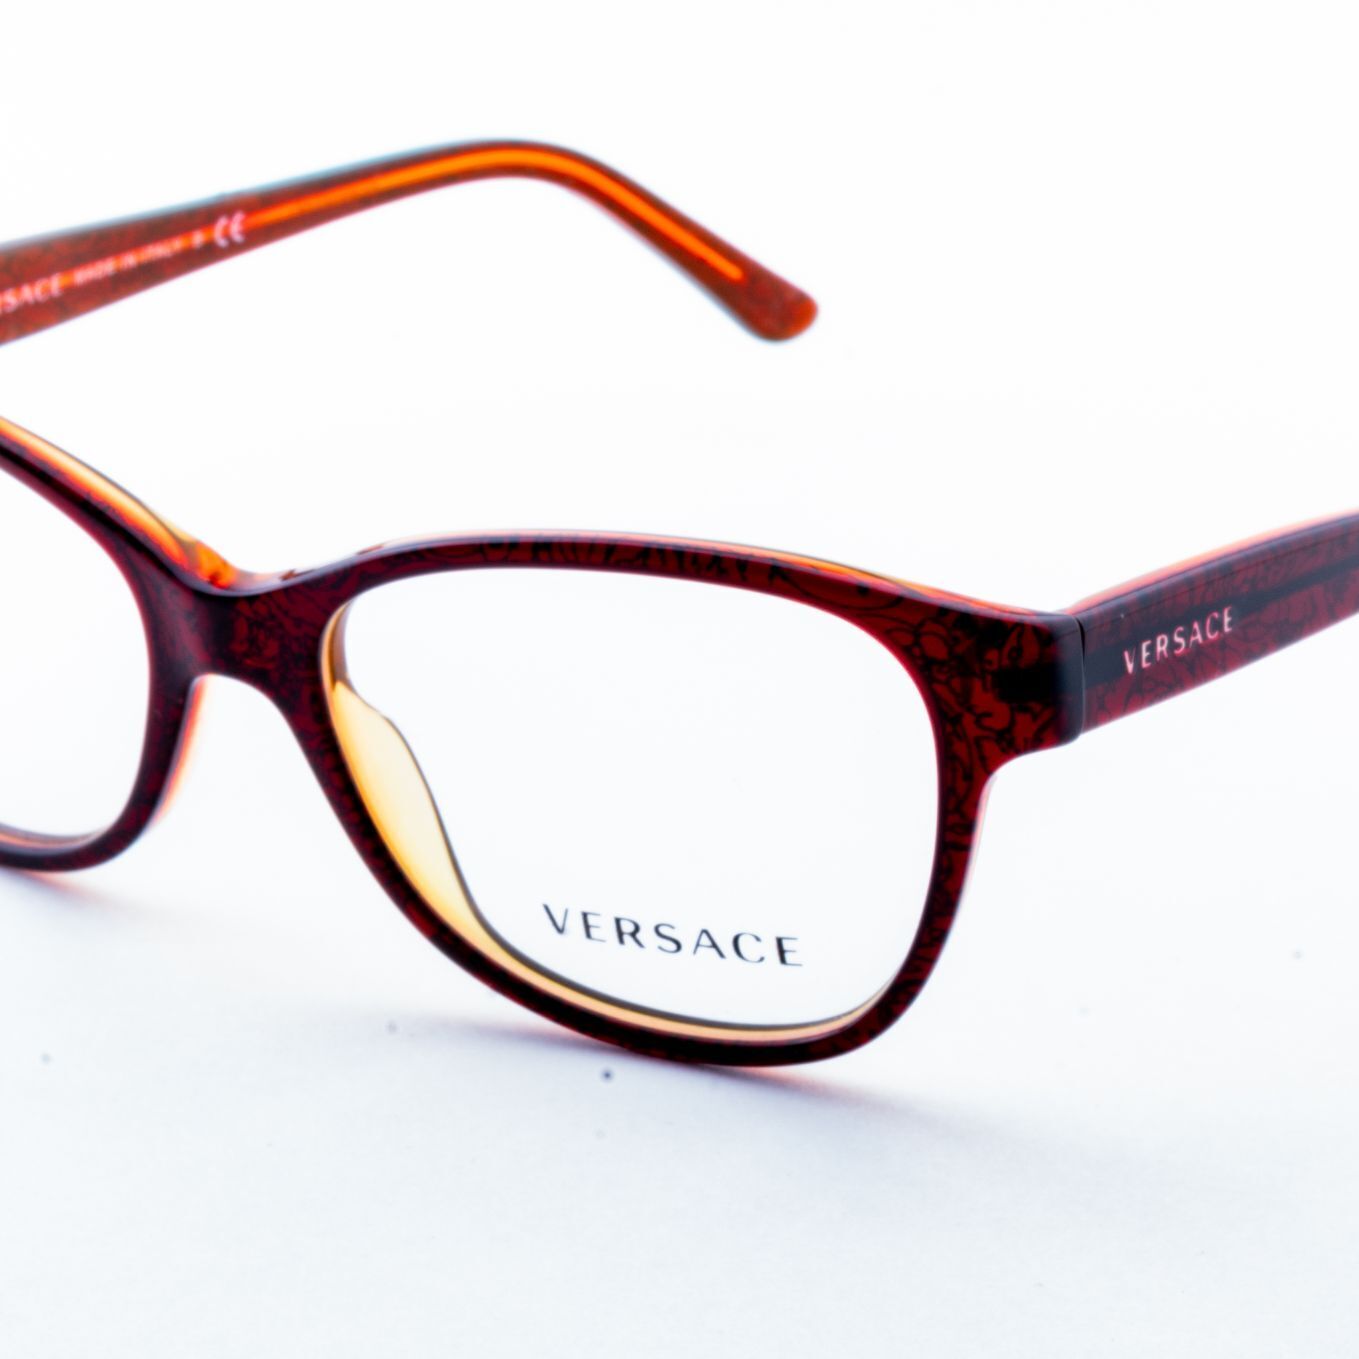 Versace MOD.3188 5089 Fassung Brille Brillengestell Brillenfassung